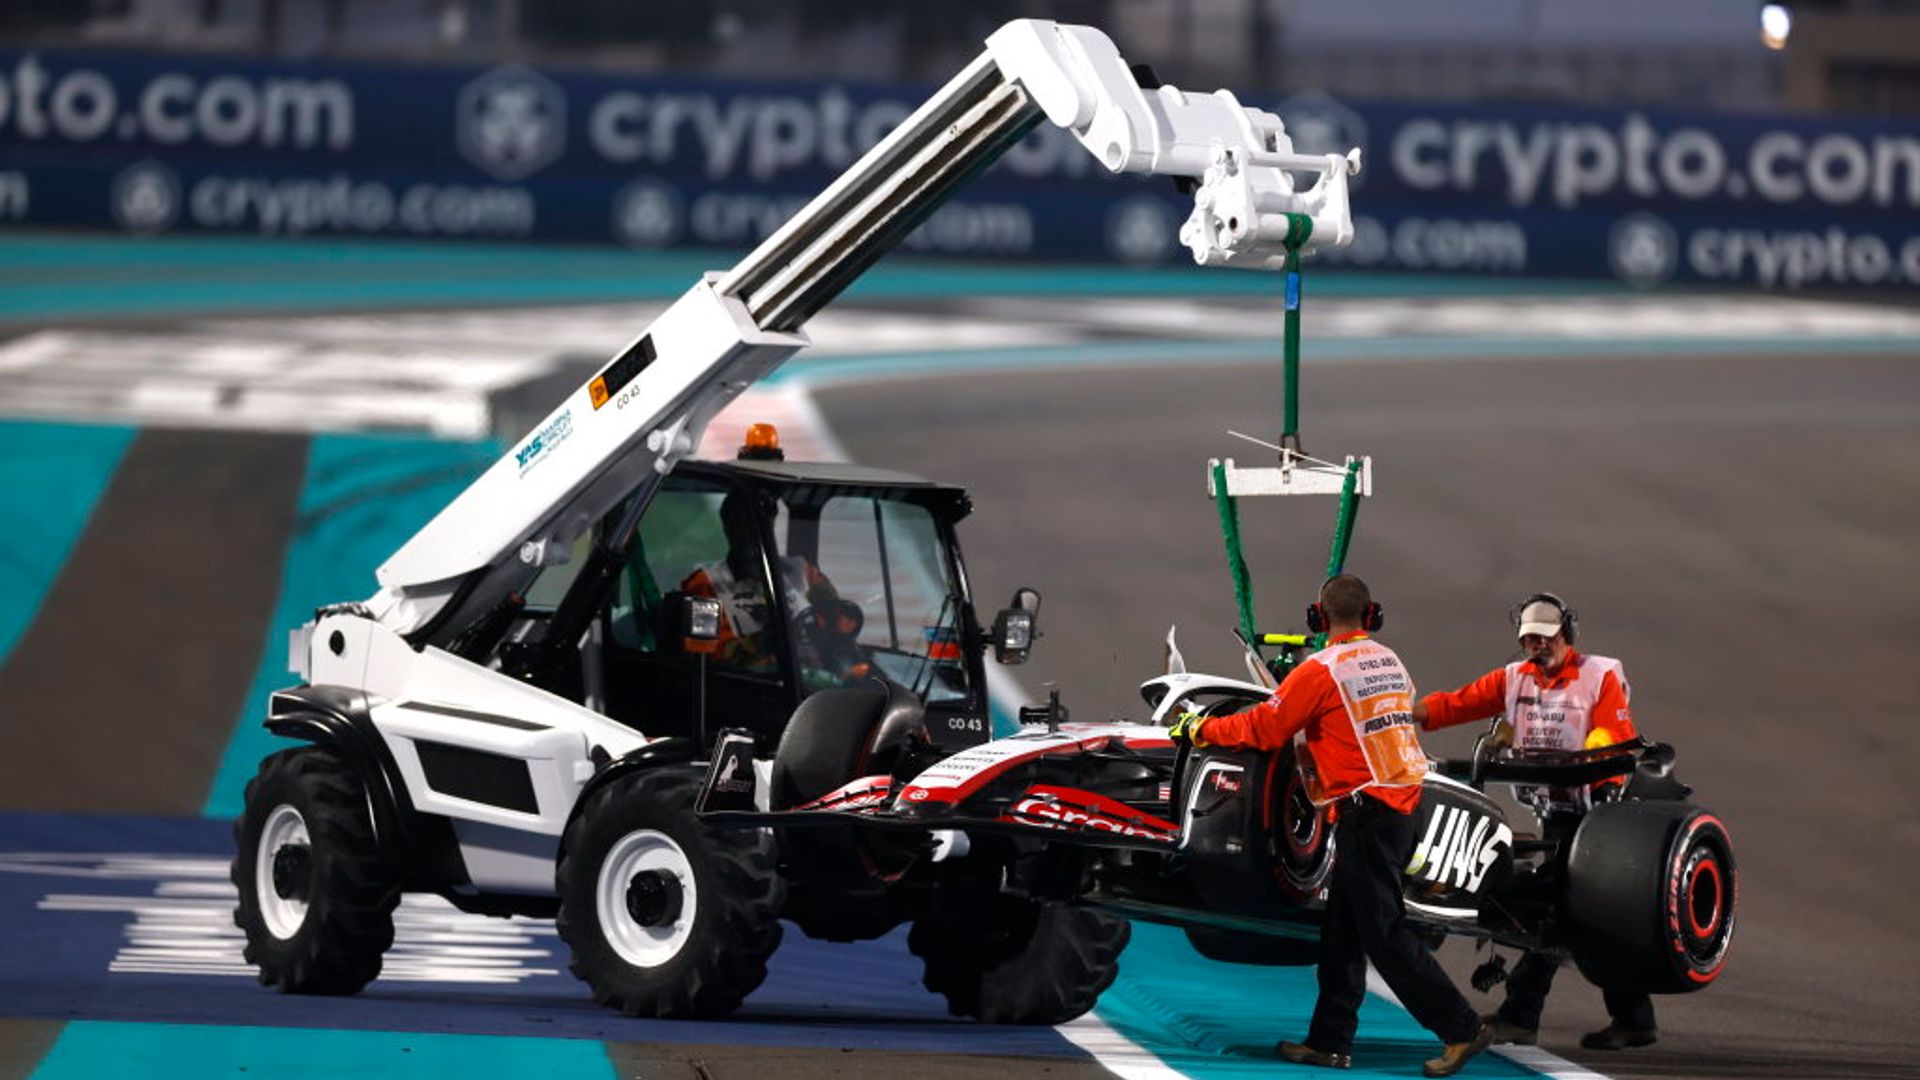 Abu Dhabi GP: Hulkenberg, Sainz disrupt Practice Two with crashes - recap